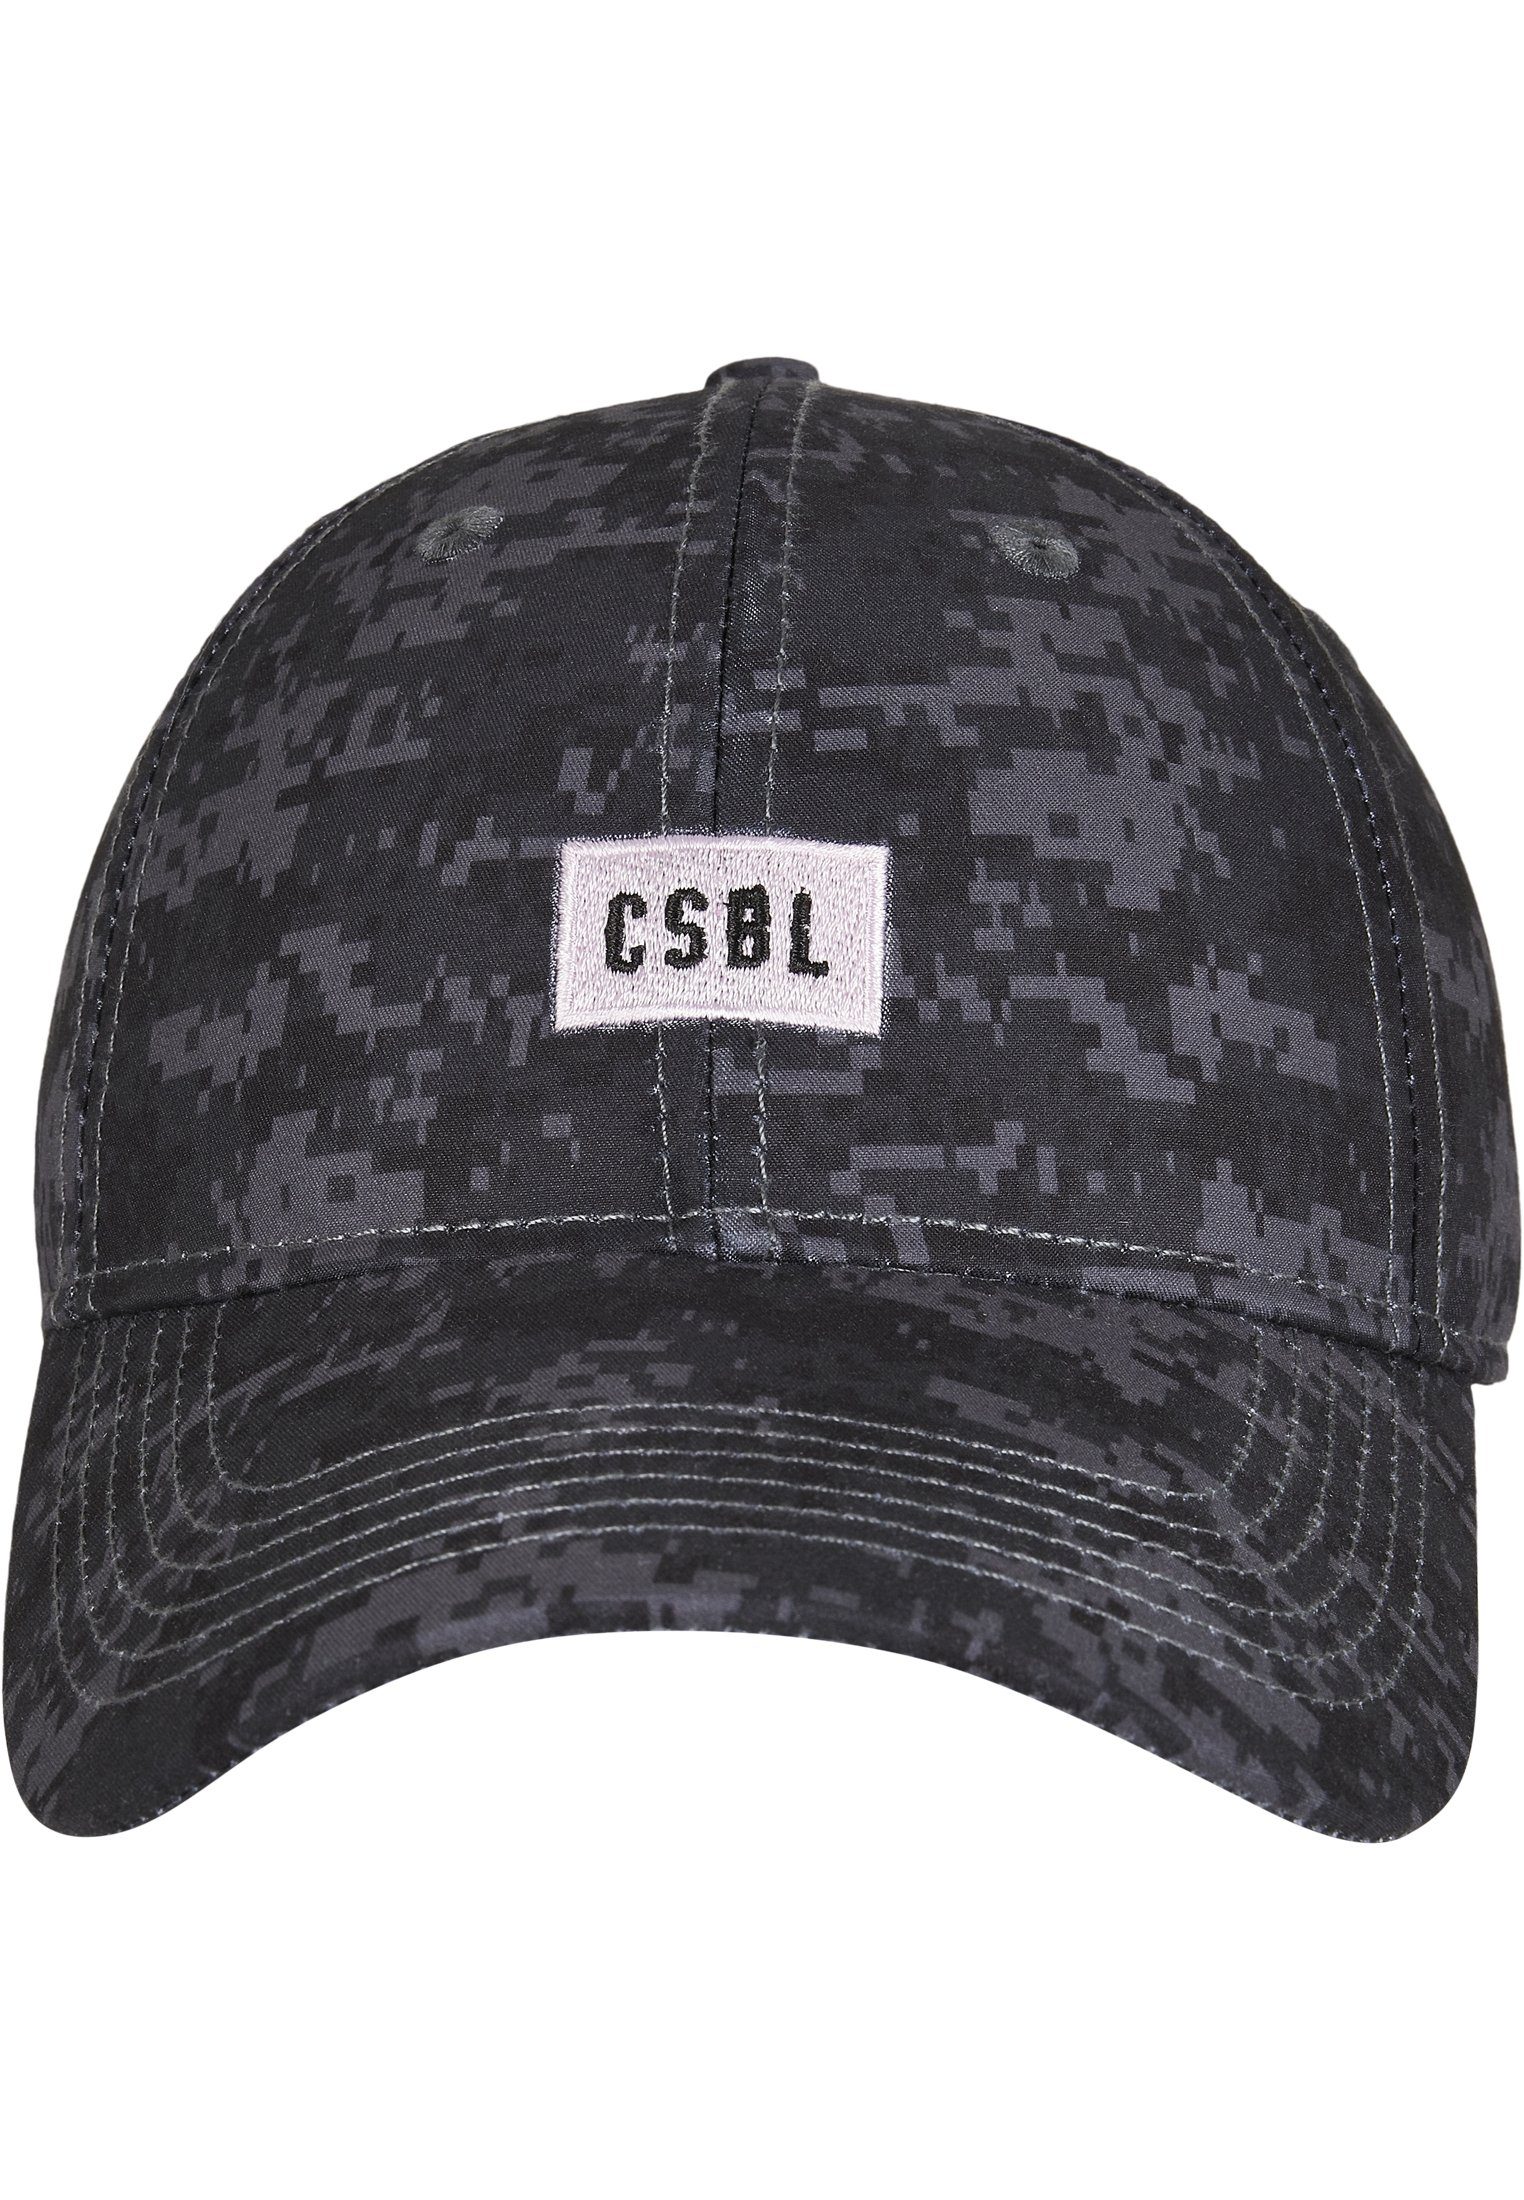 CAYLER & SONS Accessoires Dig Cap Cap Beige Snapback CSBL Curved It